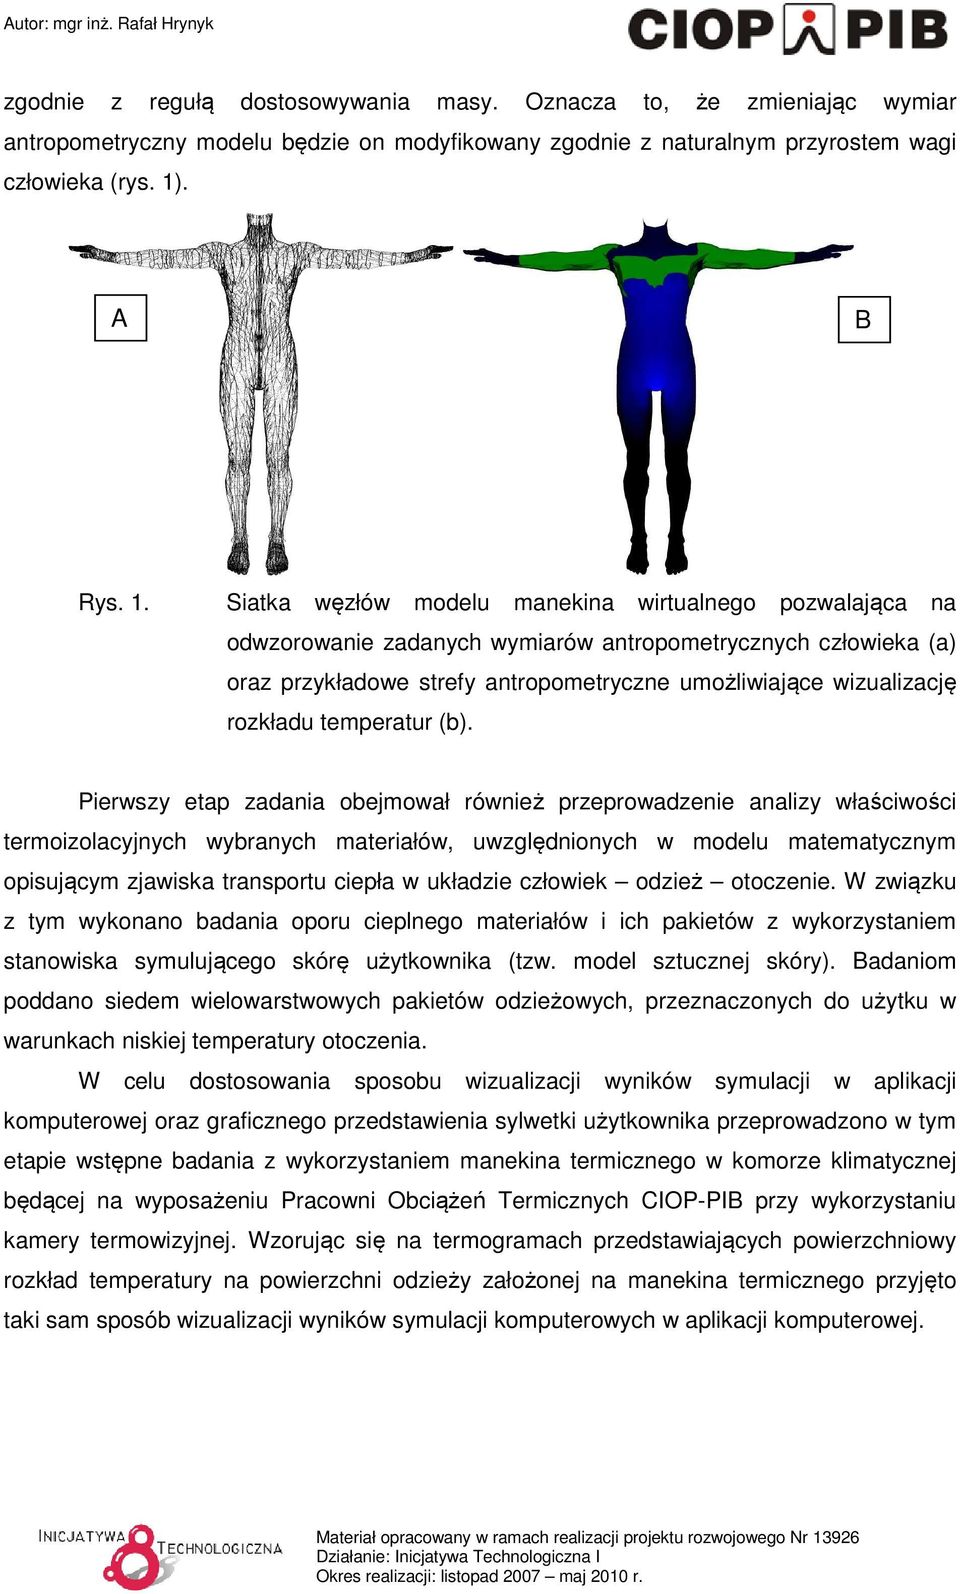 Siatka węzłów modelu manekina wirtualnego pozwalająca na odwzorowanie zadanych wymiarów antropometrycznych człowieka (a) oraz przykładowe strefy antropometryczne umożliwiające wizualizację rozkładu